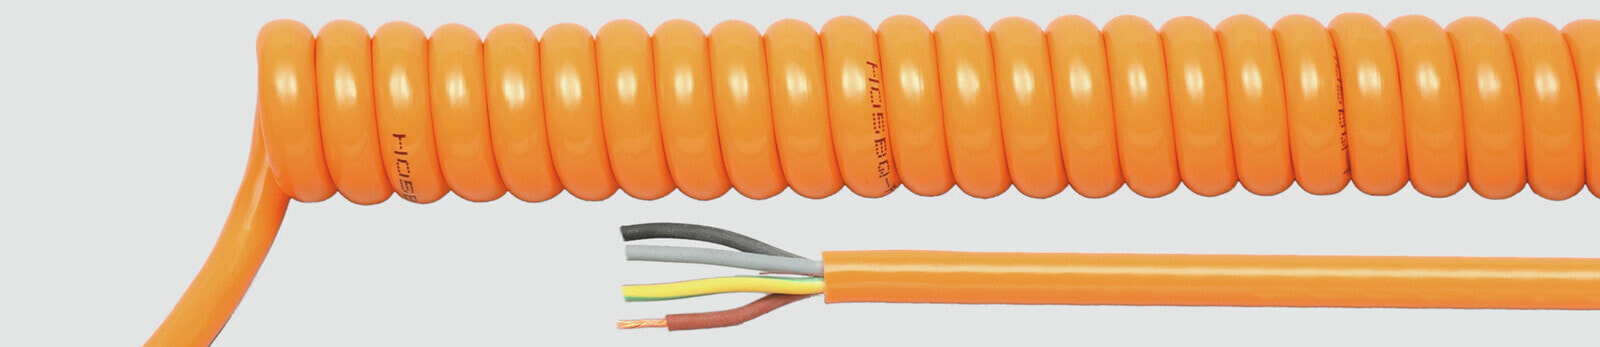 Helukabel 85410 - Low voltage cable - Orange - Cooper - 1.5 mm² - 388.8 kg/km - -25 - 70 °C